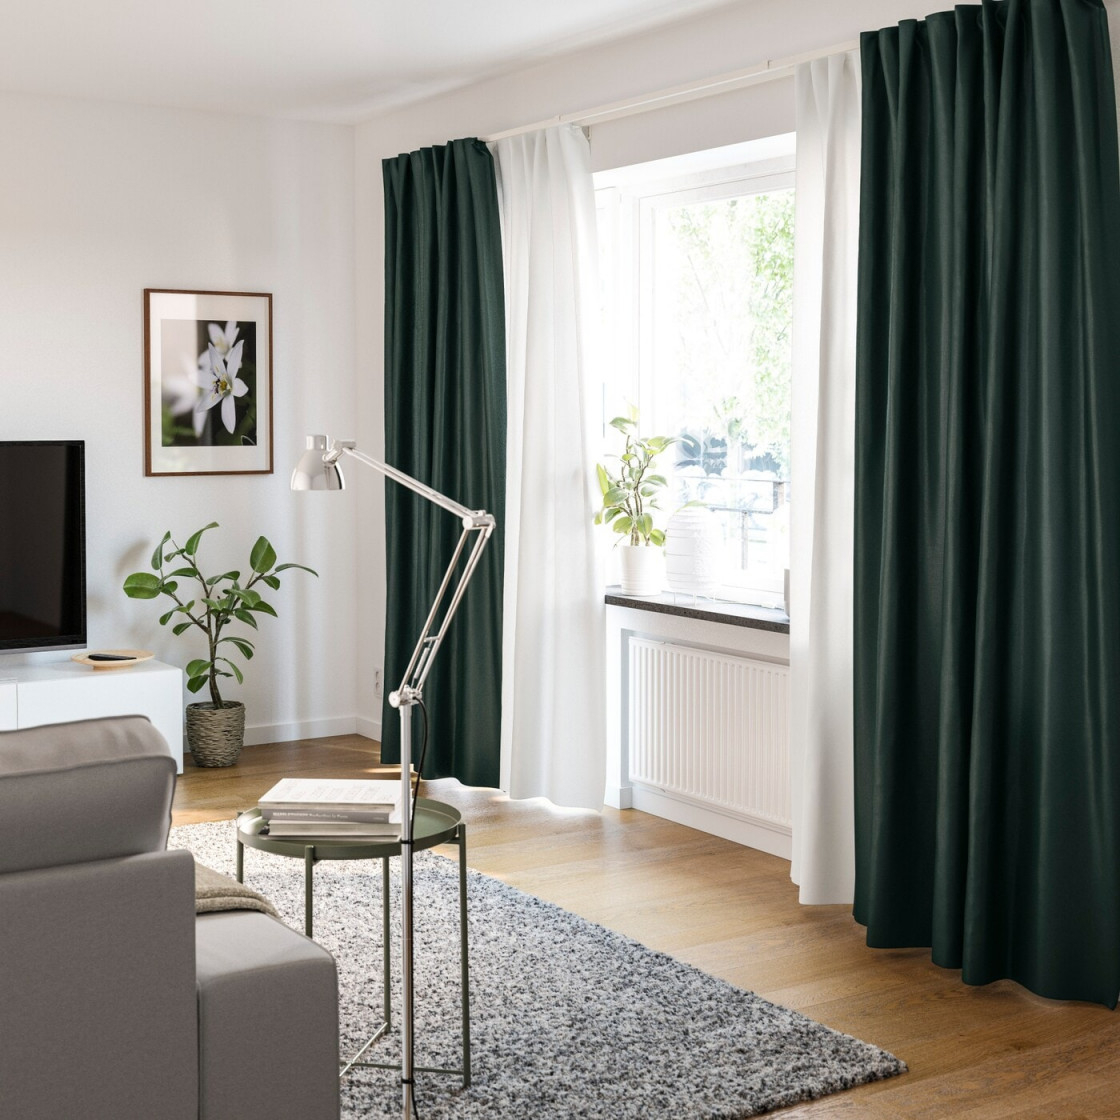 Gardinenideen Inspirationen Für Dein Zuhause  Ikea von Gardinen Wohnzimmer Blickdicht Bild